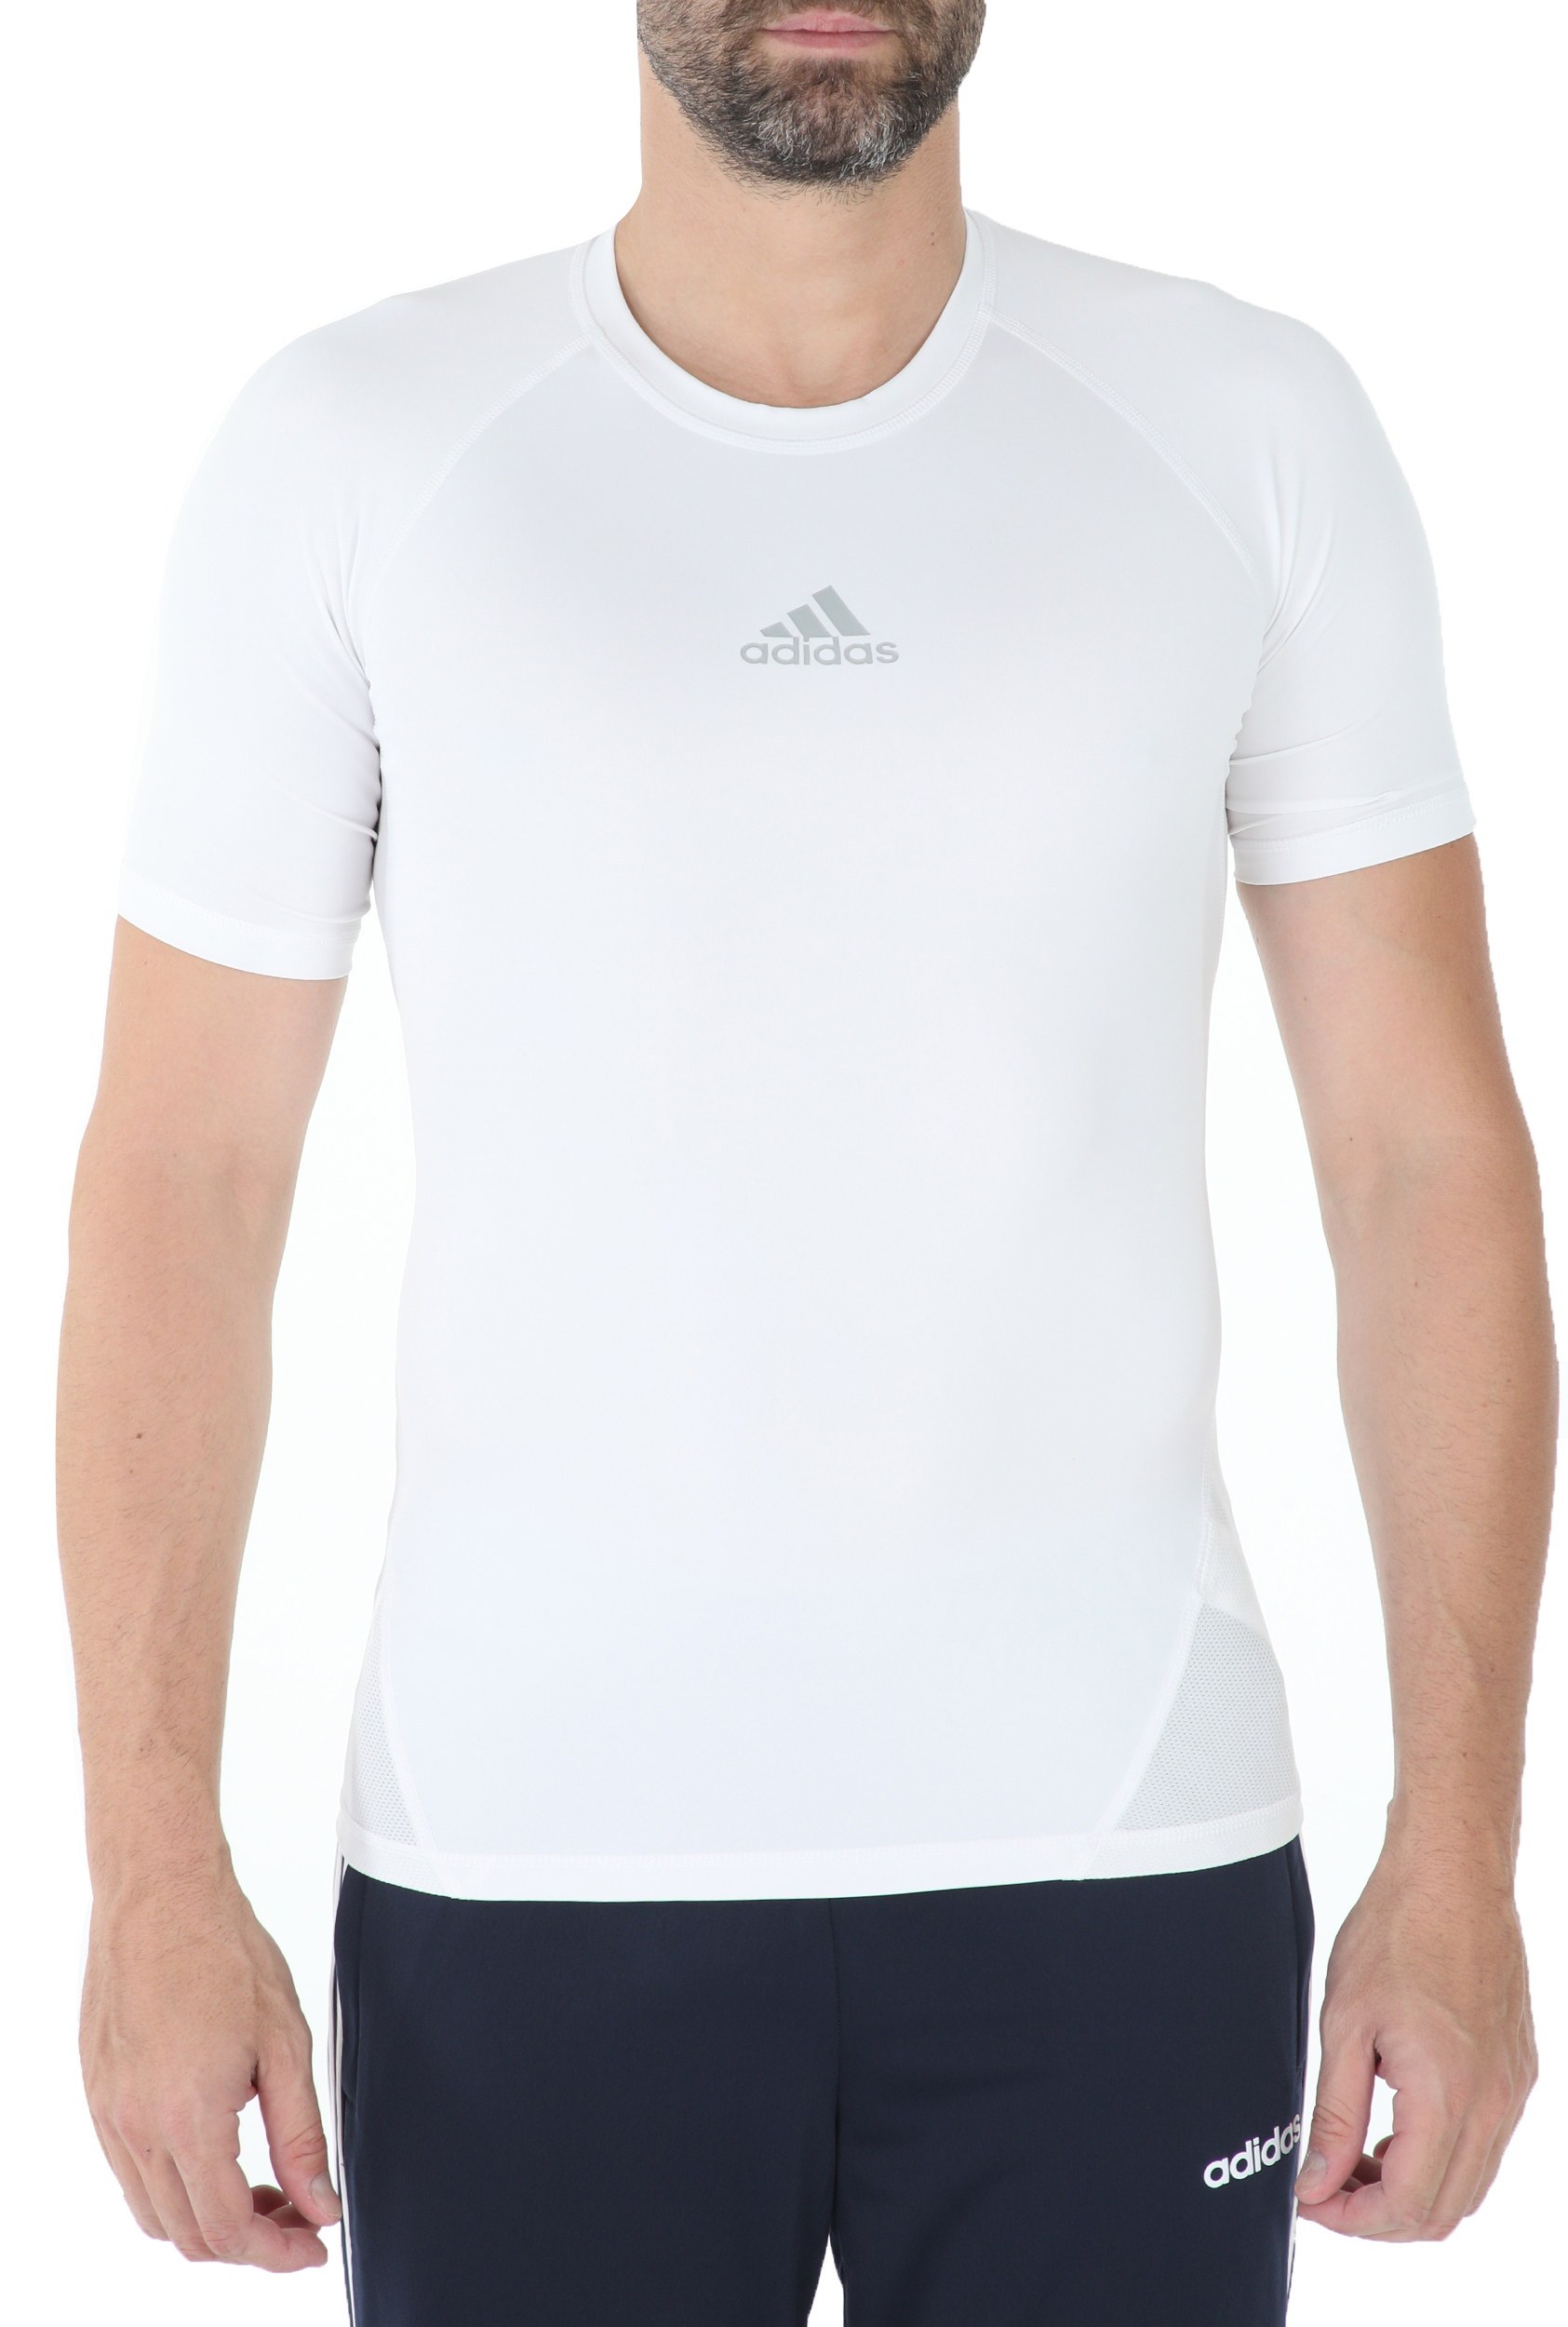 Ανδρικά/Ρούχα/Αθλητικά/T-shirt adidas Performance - Ανδρική αθλητική κοντομάνικη μπλούζα adidas ASK SPRT λευκή